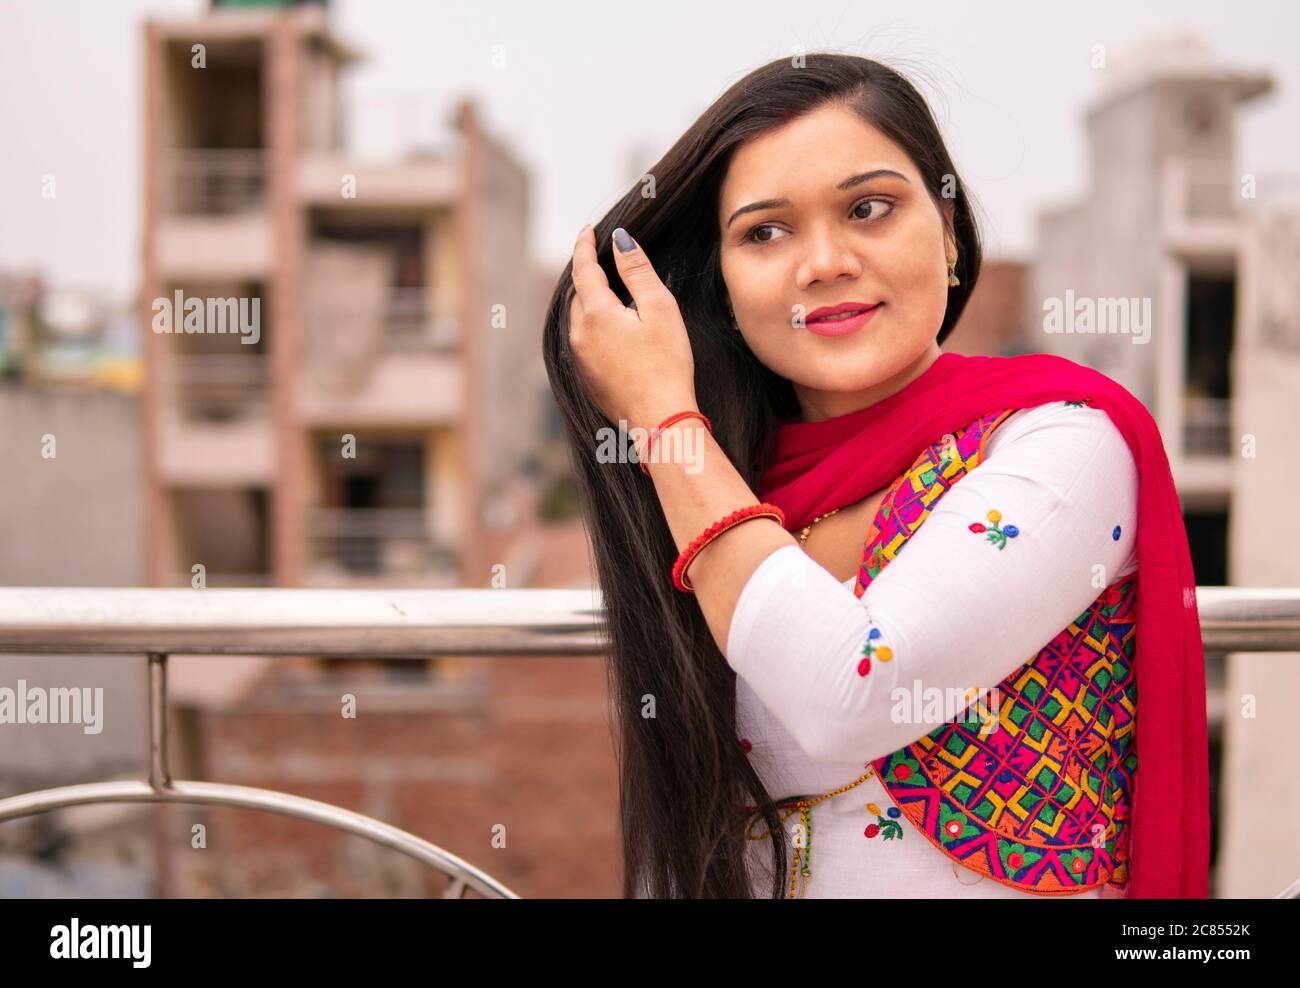 Bella giovane donna indiana che tiene i suoi lunghi capelli neri e in piedi vicino alla ringhiera sul tetto. Sta guardando via e pensando con sorriso. Foto Stock